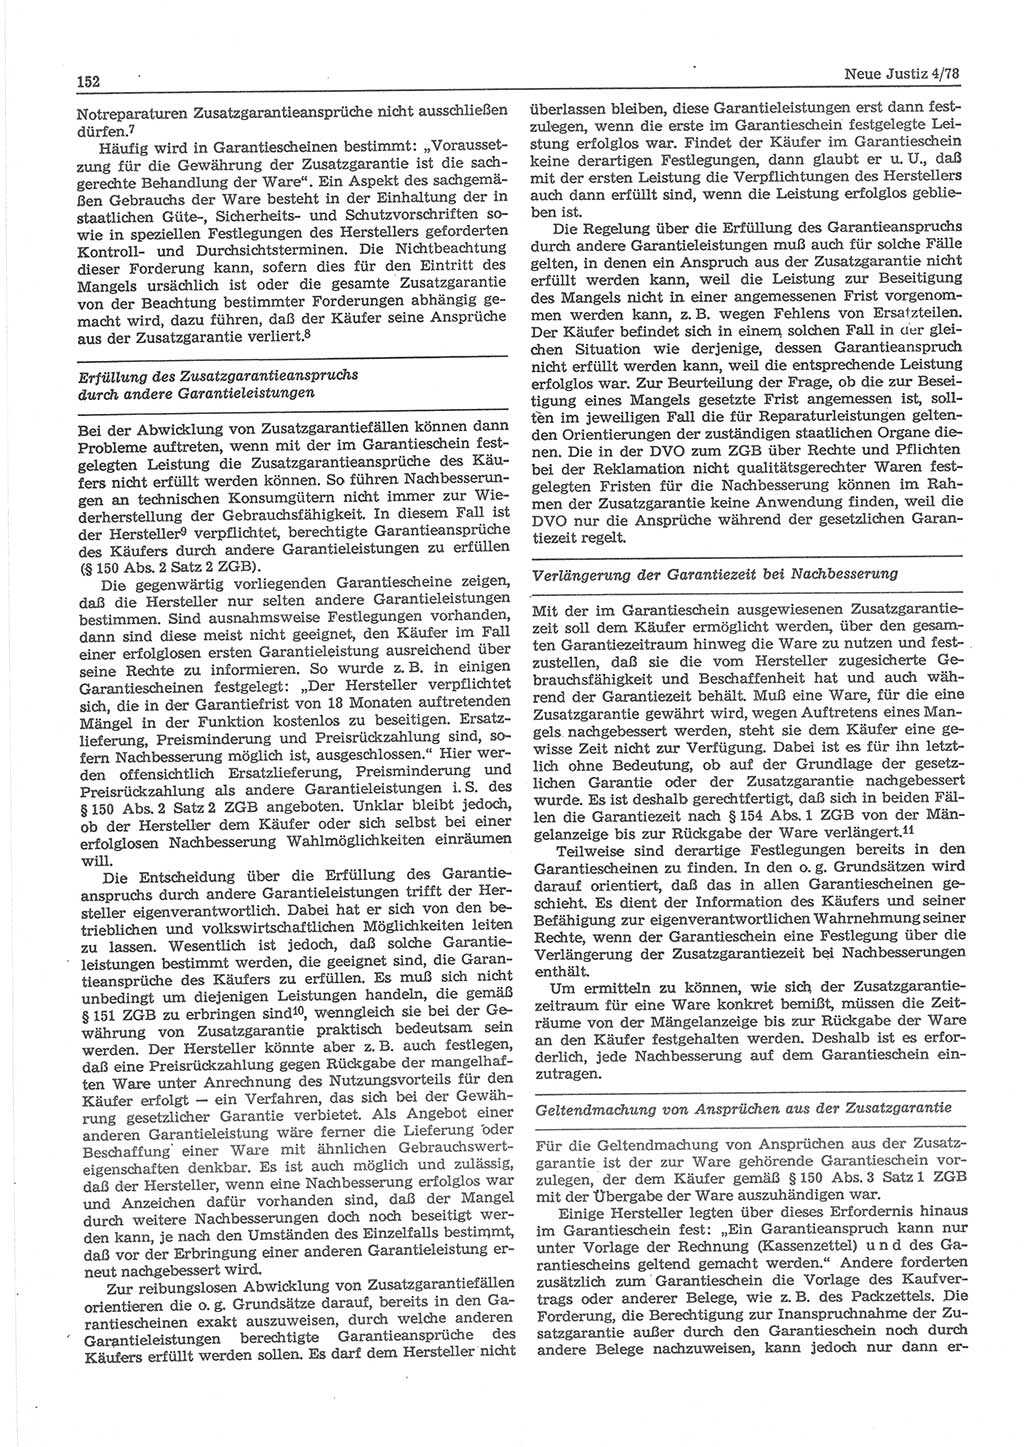 Neue Justiz (NJ), Zeitschrift für sozialistisches Recht und Gesetzlichkeit [Deutsche Demokratische Republik (DDR)], 32. Jahrgang 1978, Seite 152 (NJ DDR 1978, S. 152)